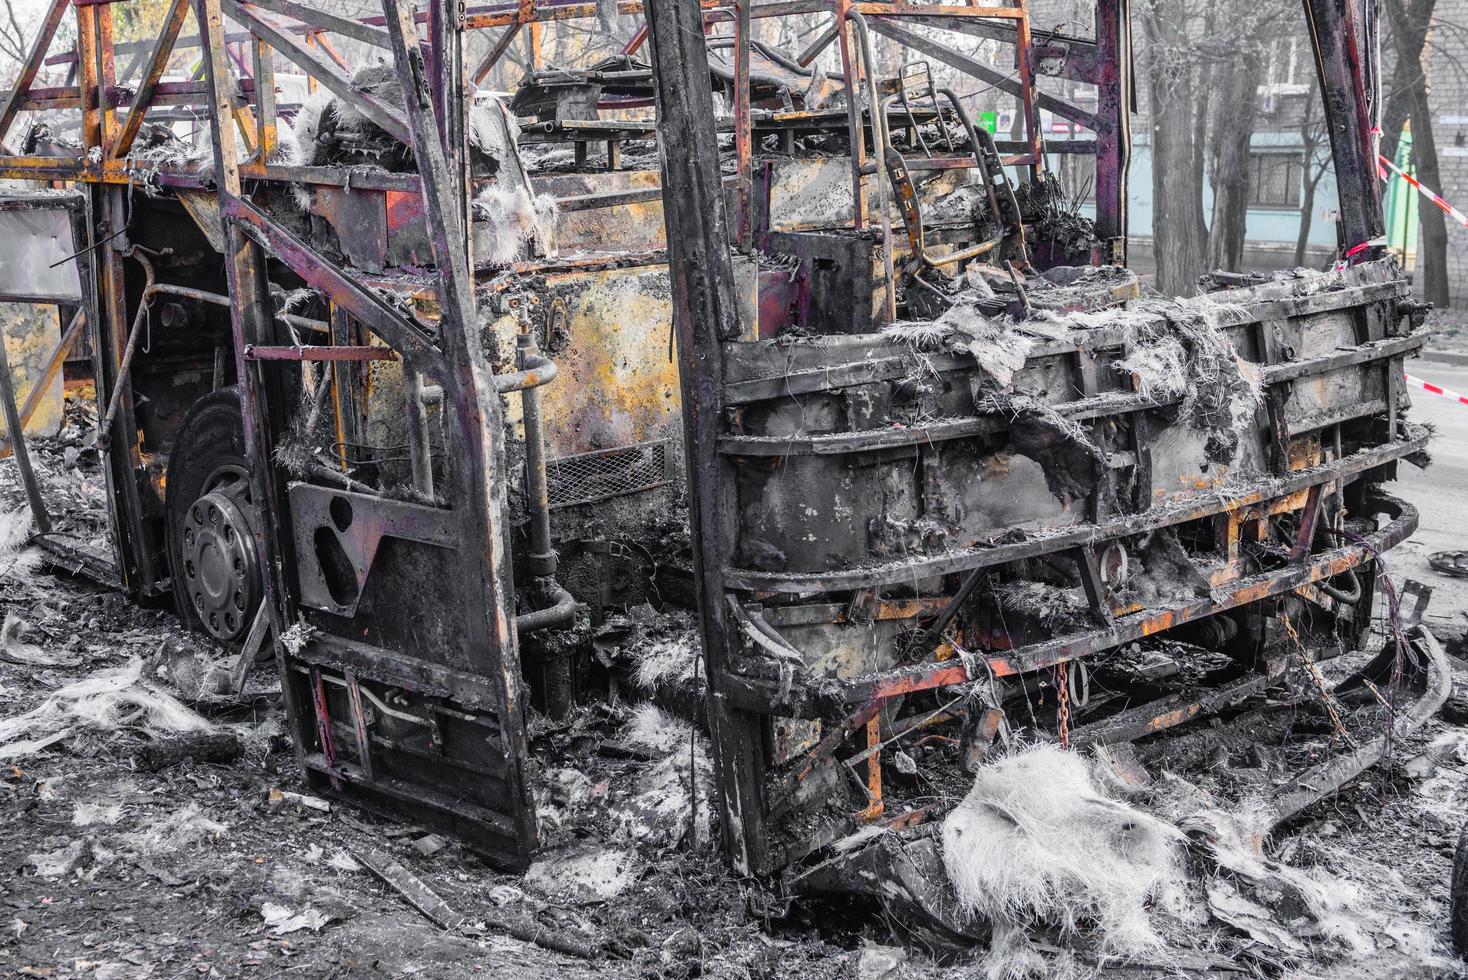 verbrannter Bus wird auf der Straße gesehen, nachdem er während der Fahrt in Brand geraten war, nach dem Brand foto